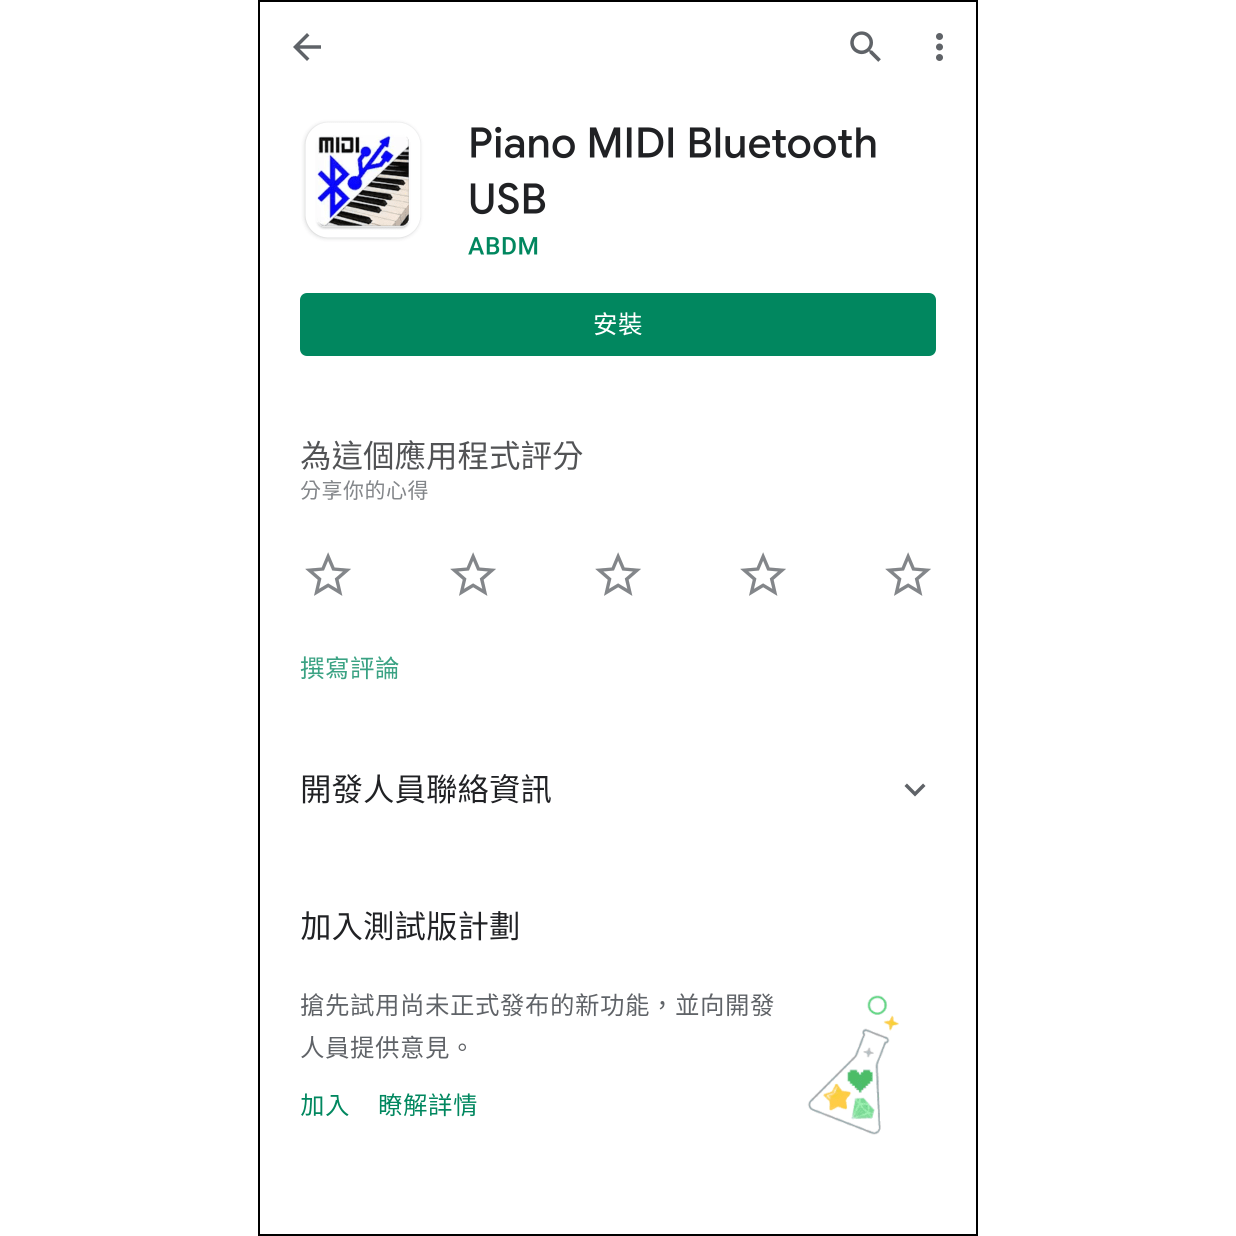 1. 安裝應用程式在Google Play中尋找並安裝 Piano MIDI Bluetooth USB。